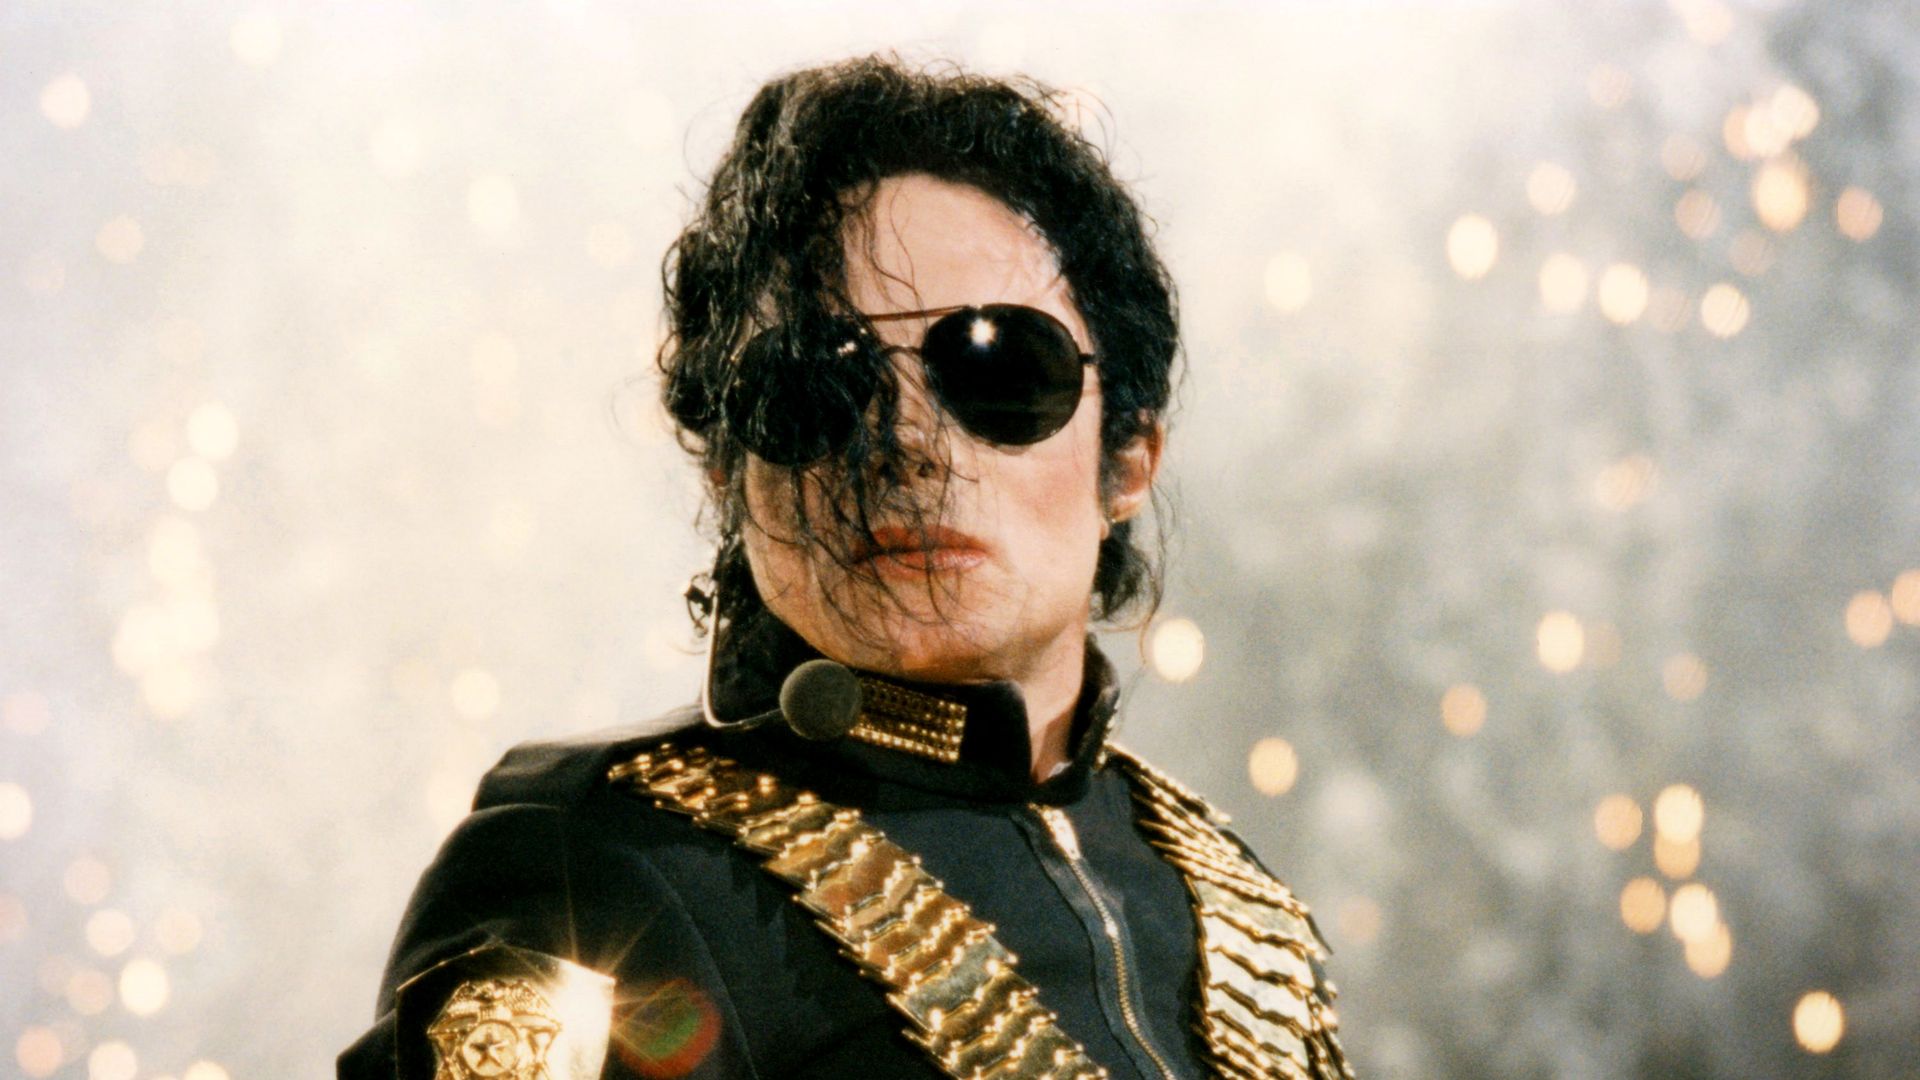 Michael Jackson died of cardiac arrest in June 2009